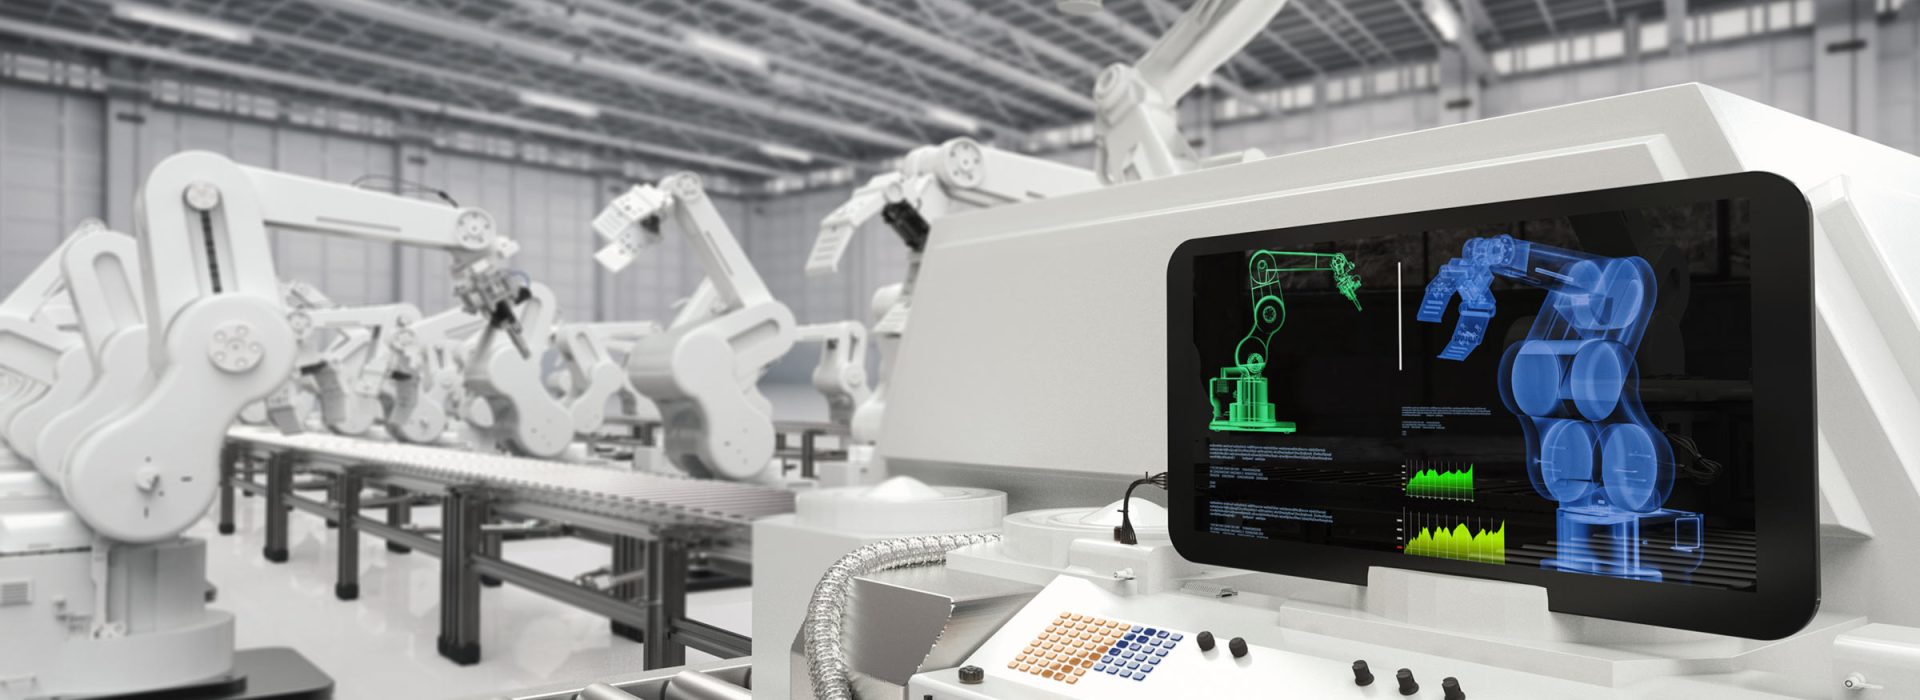 belontia automation robotics